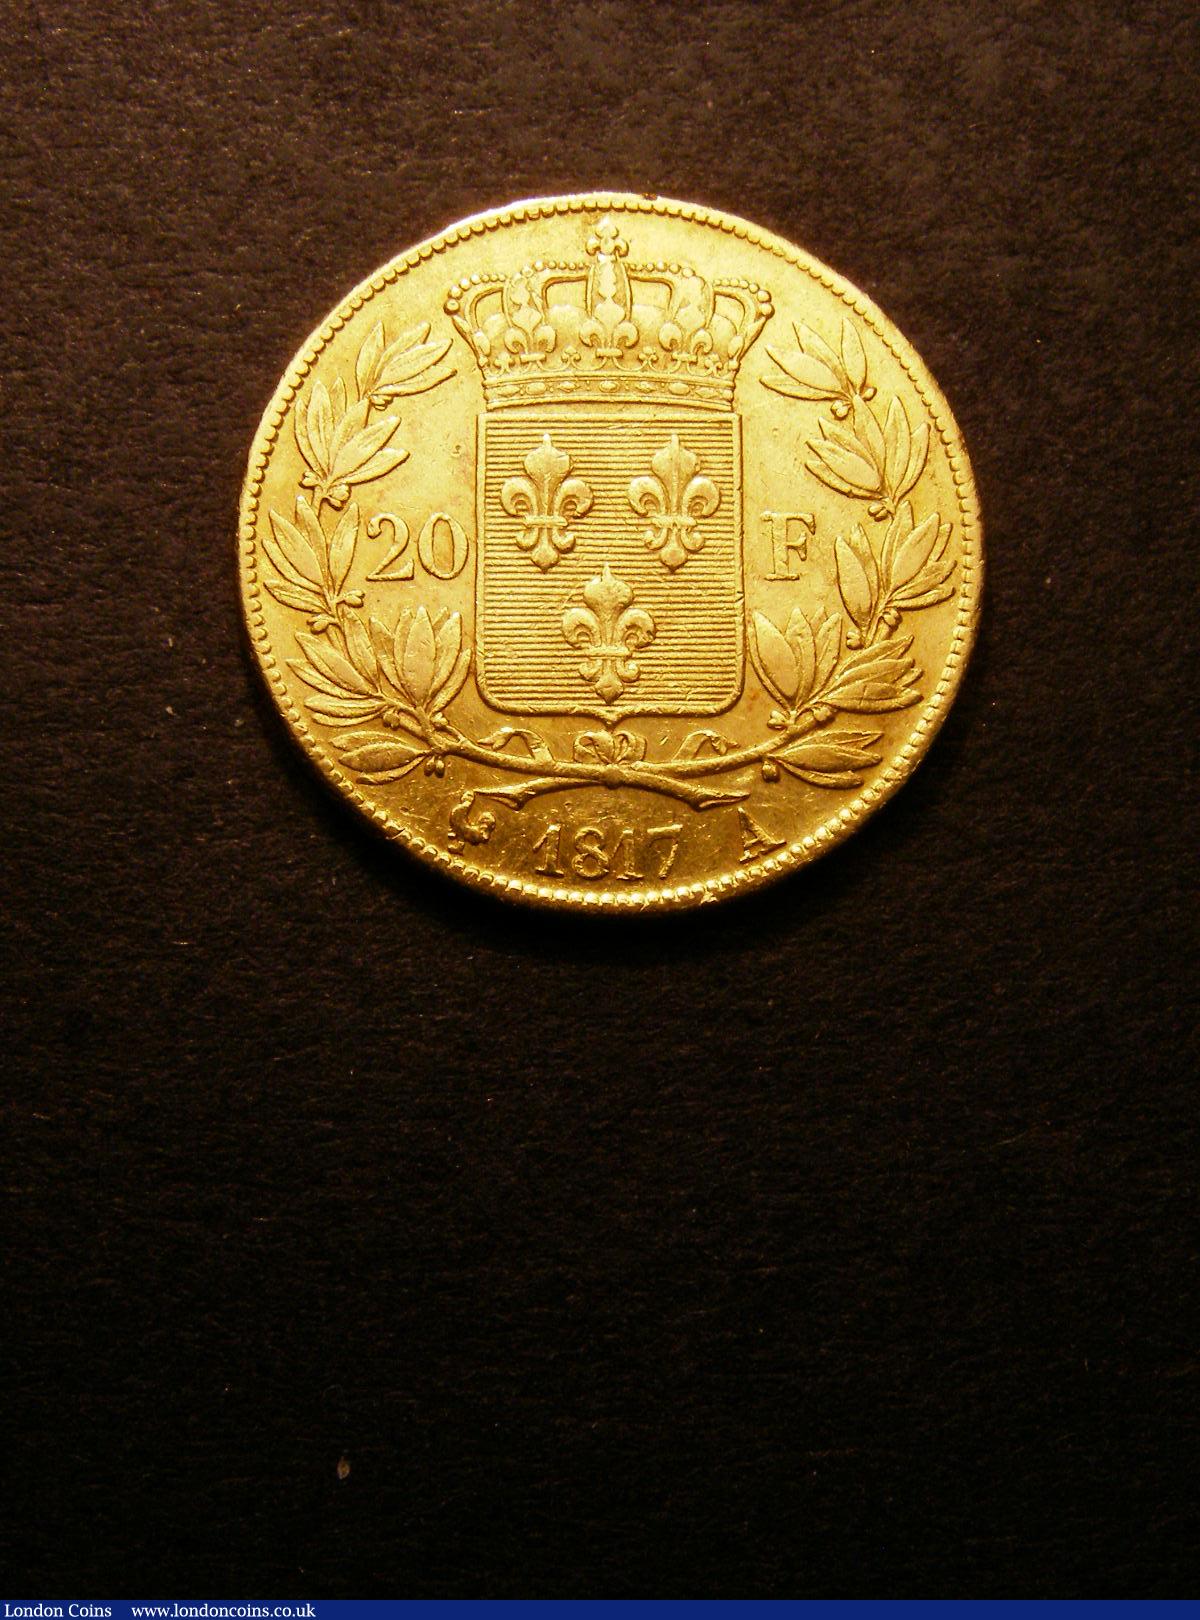 France 20 Francs Gold 1817 A Le Franc 519/5 GF/NVF : World Coins : Auction 133 : Lot 1306